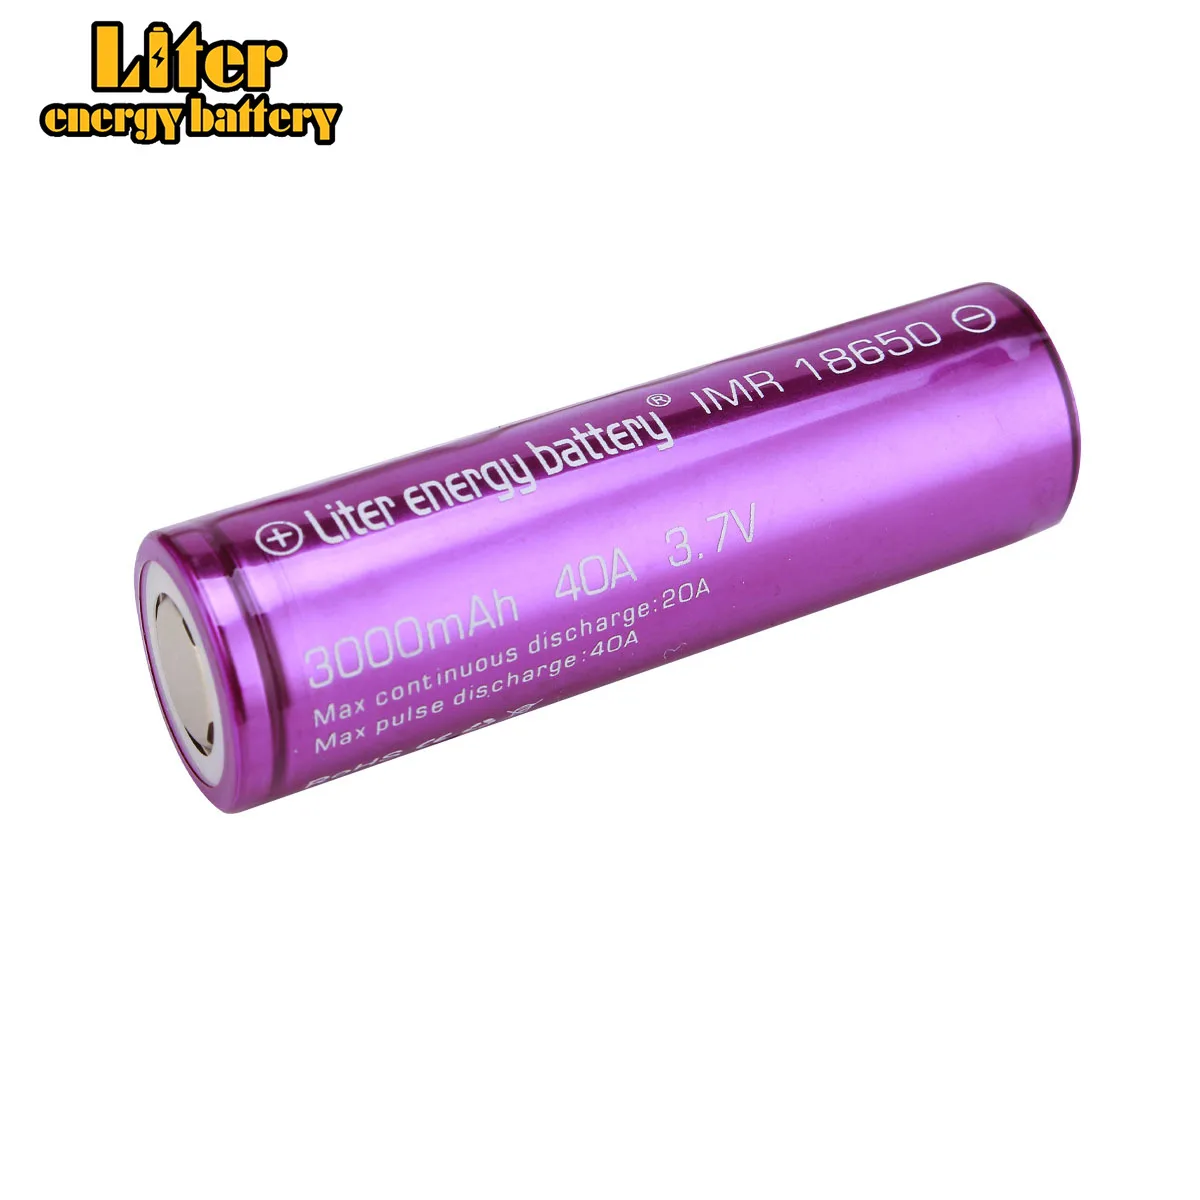 1 шт. высокое качество литр энергии батарея 18650 3000 мАч 40a для бокс мод электронных